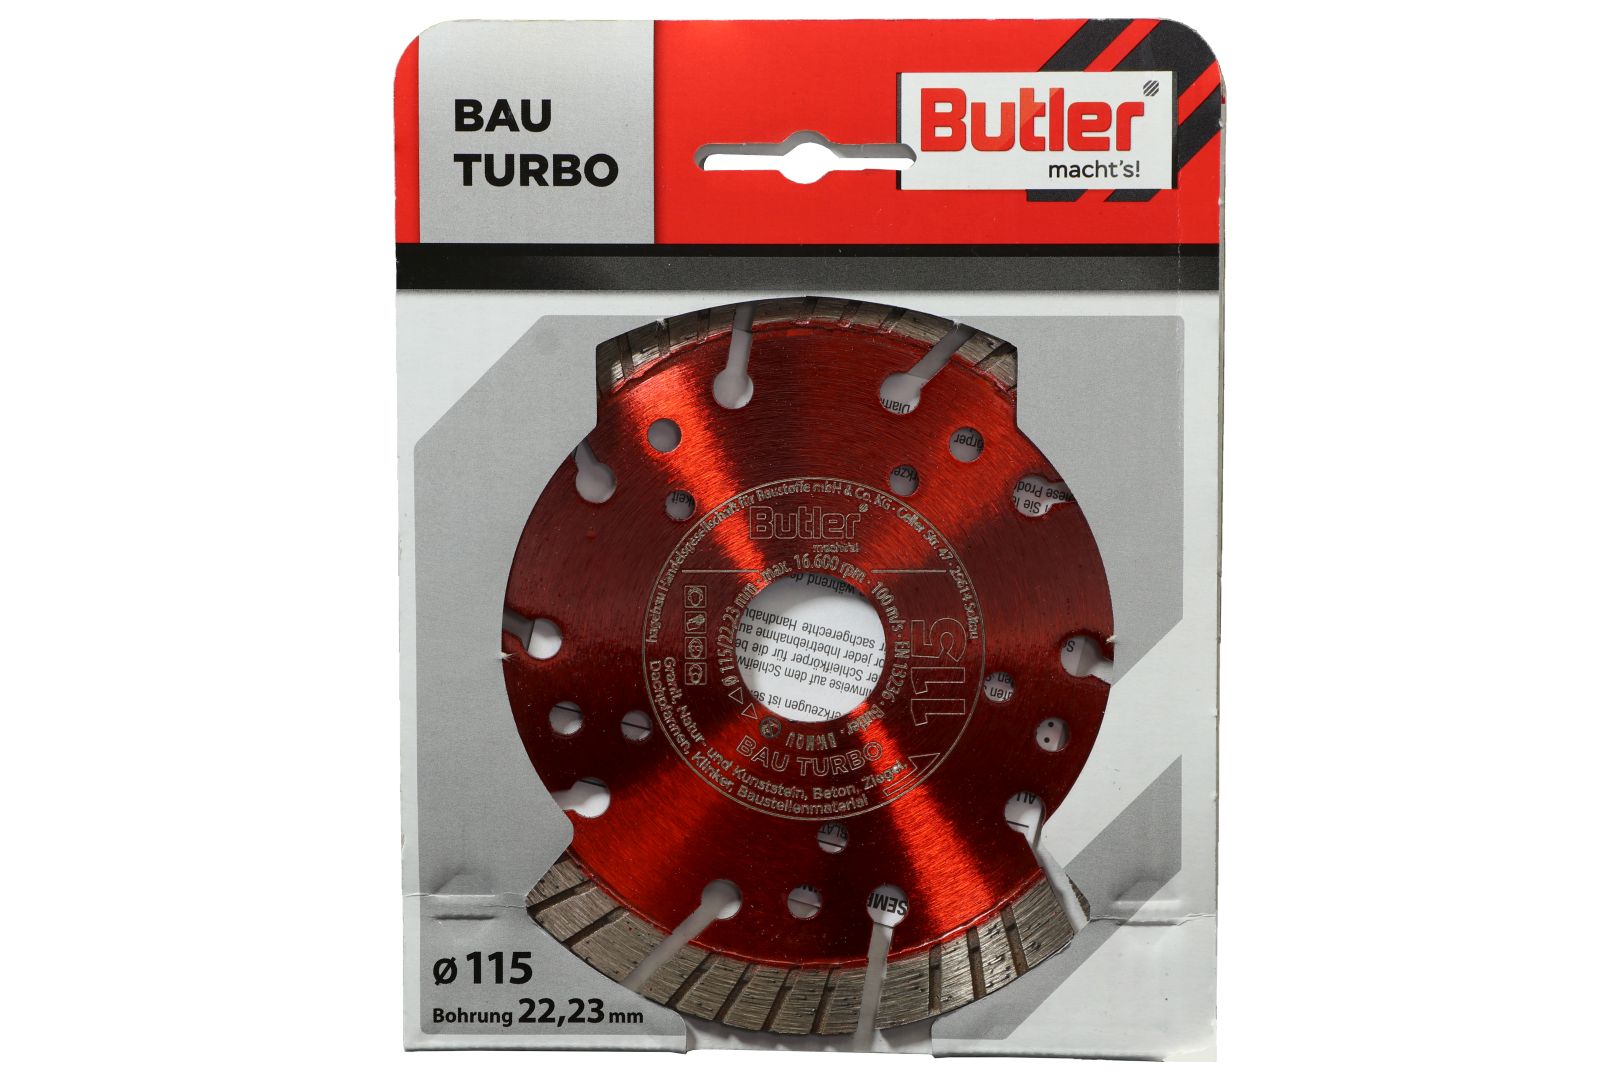 Butler macht's! Diamant-Trennscheibe Bau Turbo, Bohrung: 22,23 mm, Ø 115 mm